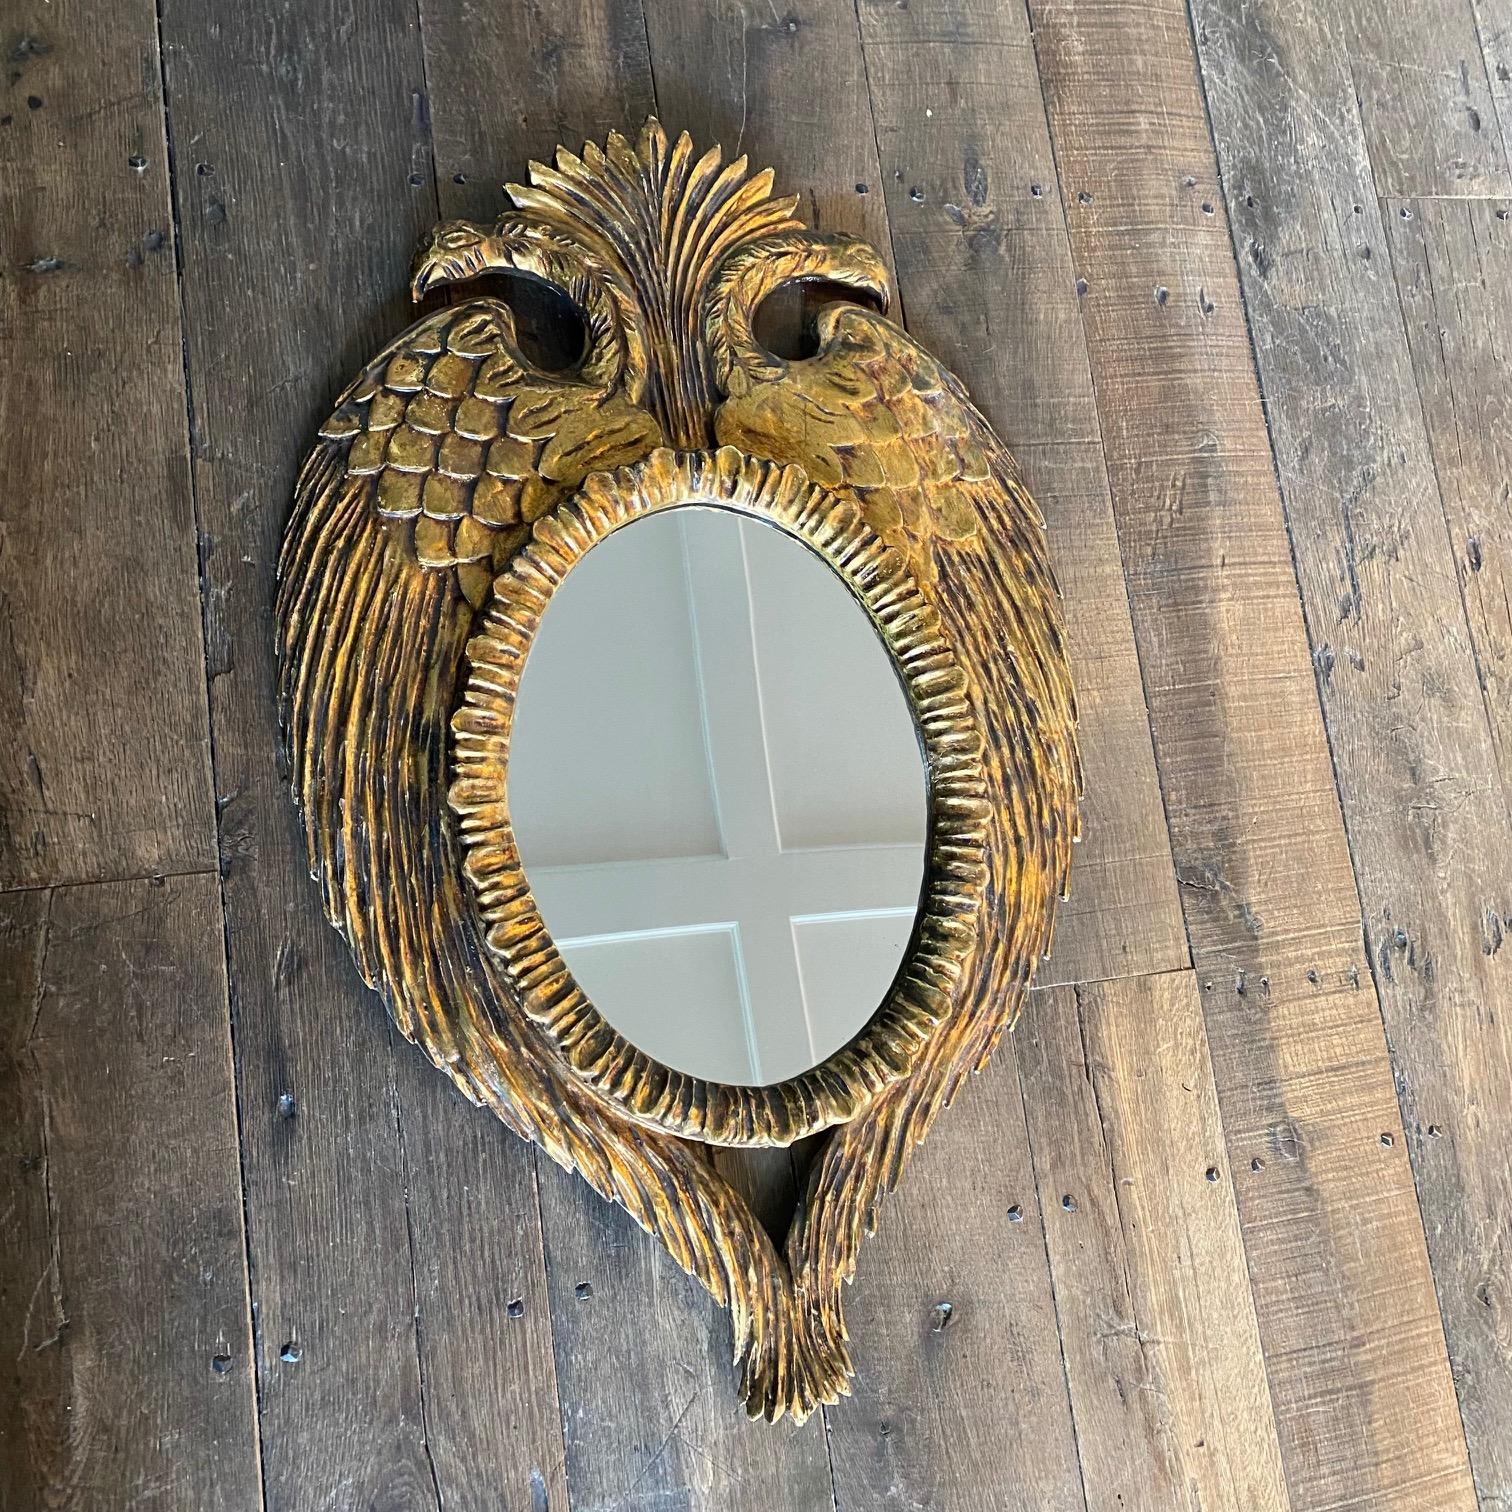 Exquisiter Spiegelrahmen aus geschnitztem französischem Goldholz in Form eines gekrönten Doppelkopfadlers. Äußerst dekorativer Rahmen mit doppelköpfigen Adlern, deren symmetrische Flügel den zentralen ovalen Spiegel umschließen. Dieser